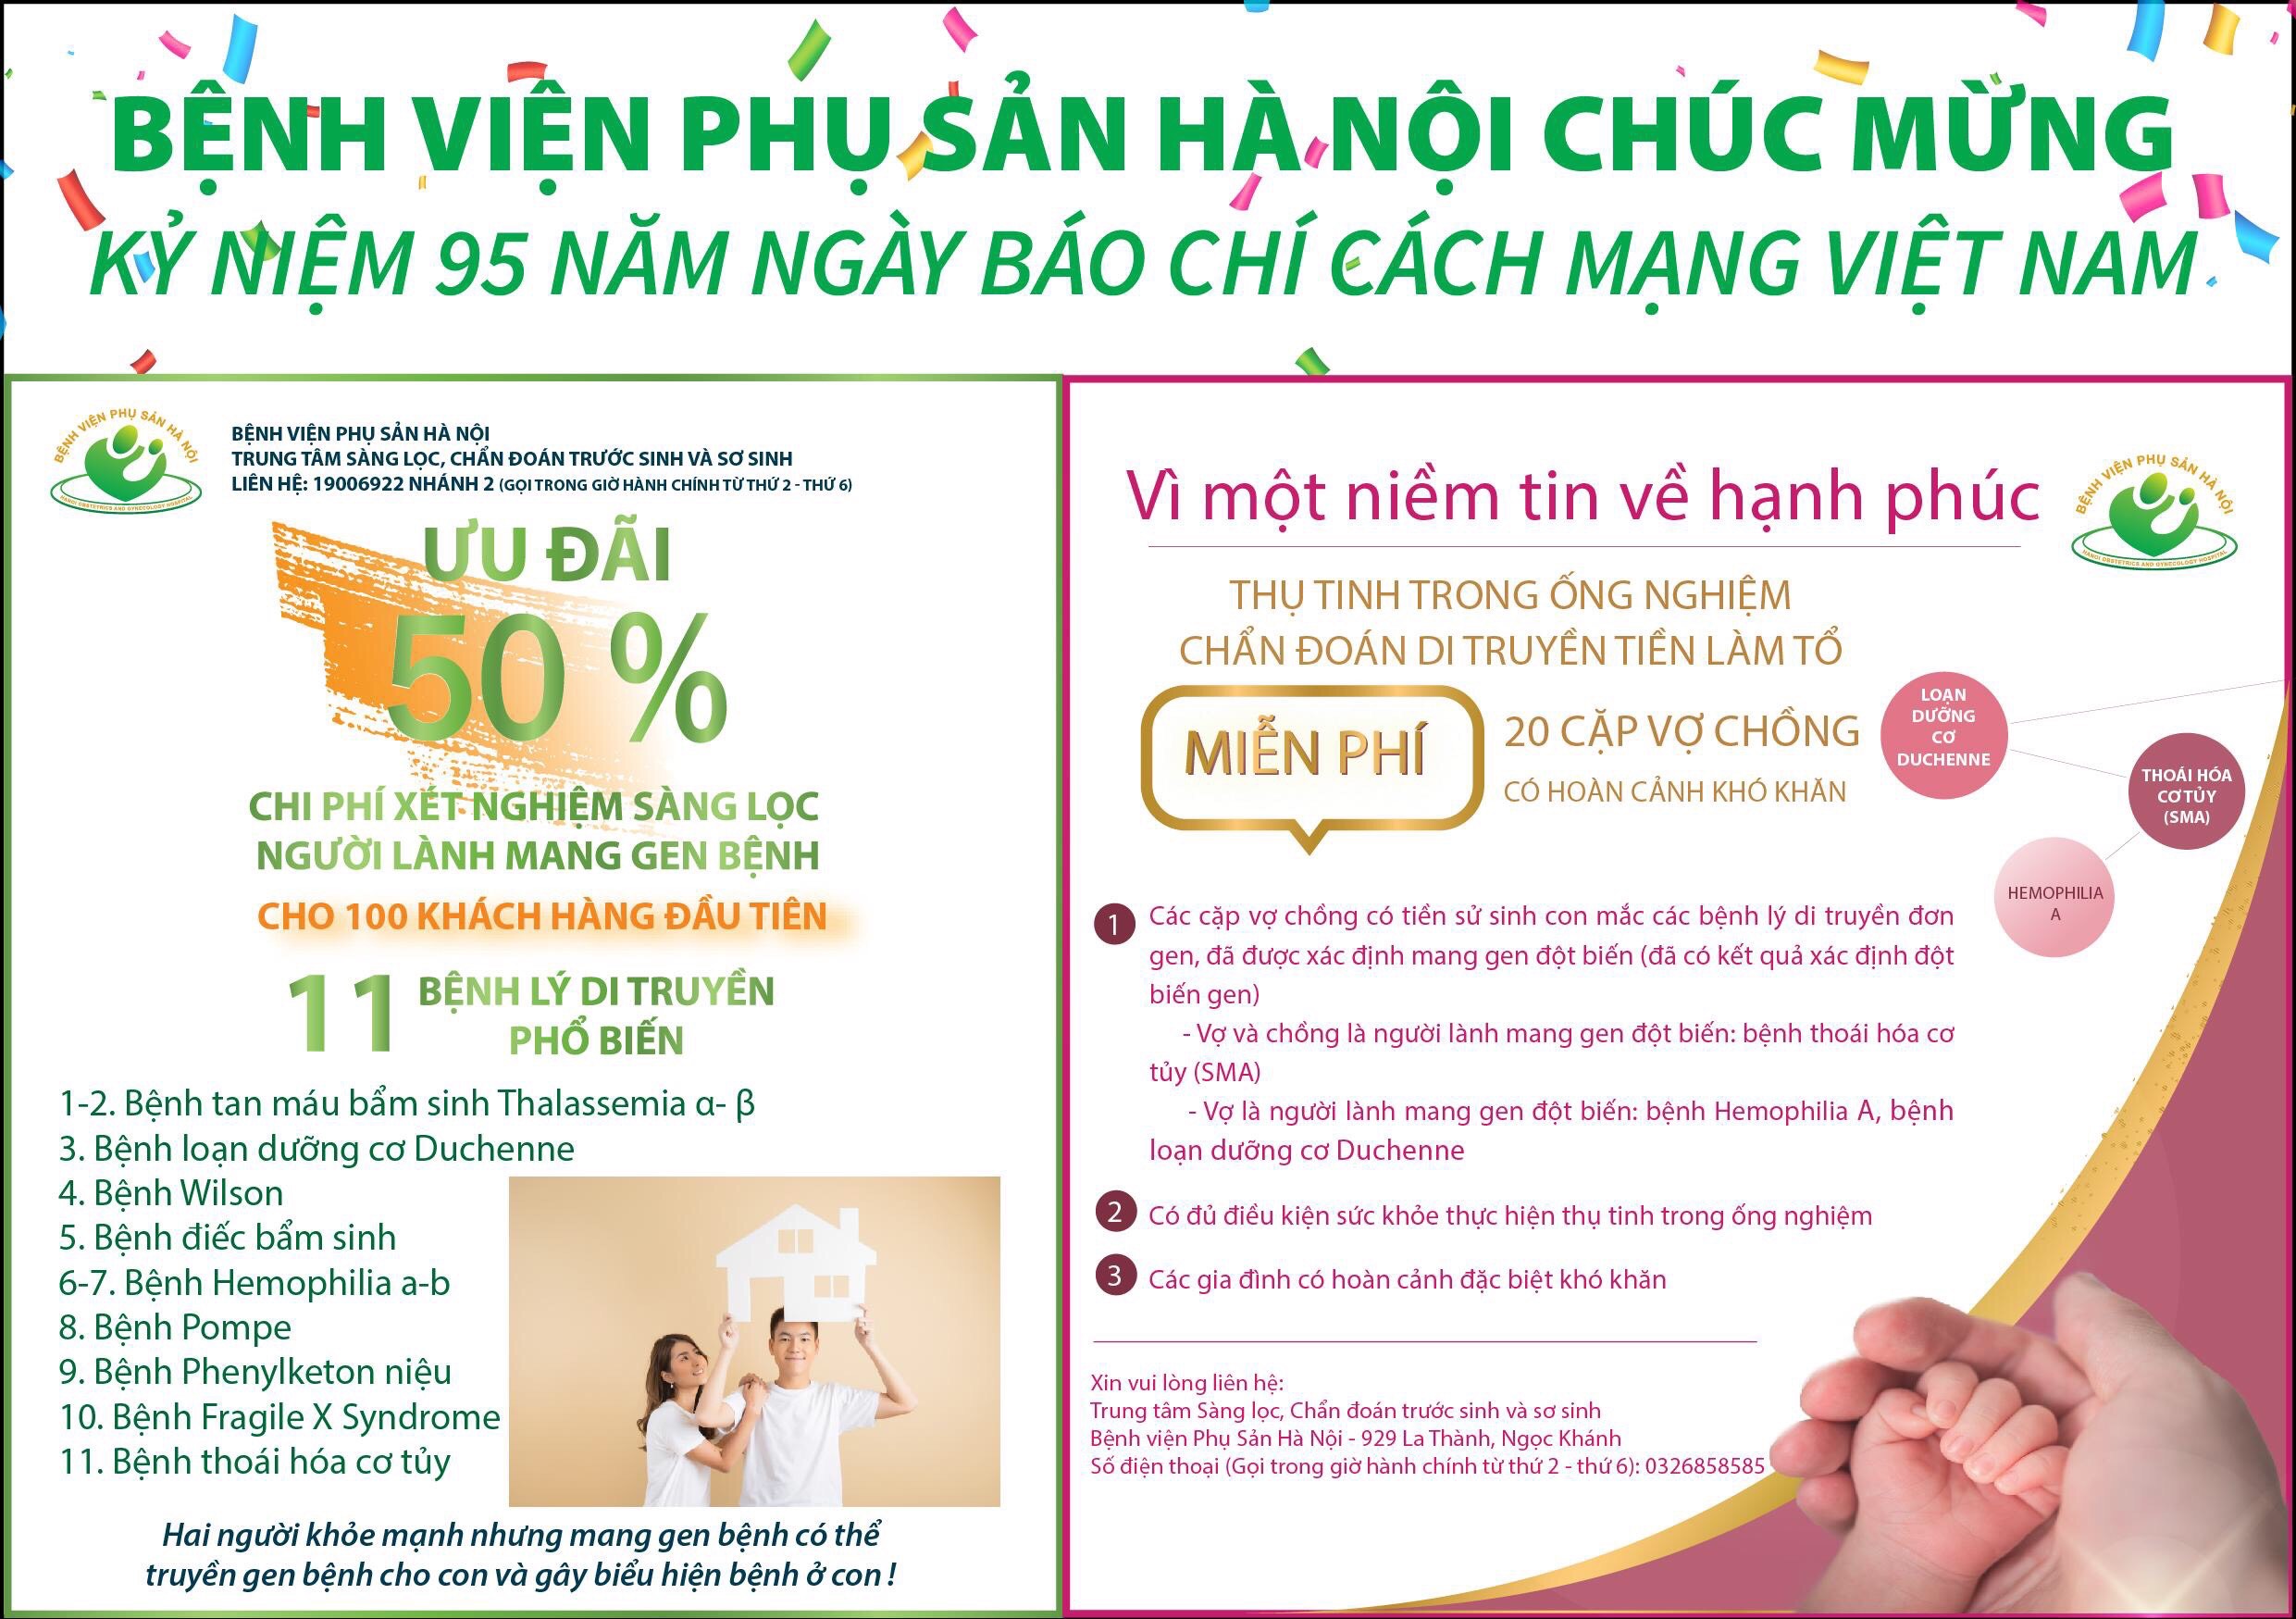 Bệnh viện Phụ sản Hà Nội chúc mừng kỷ niệm 95 năm ngày báo chí cách mạng Việt Nam - Ảnh 1